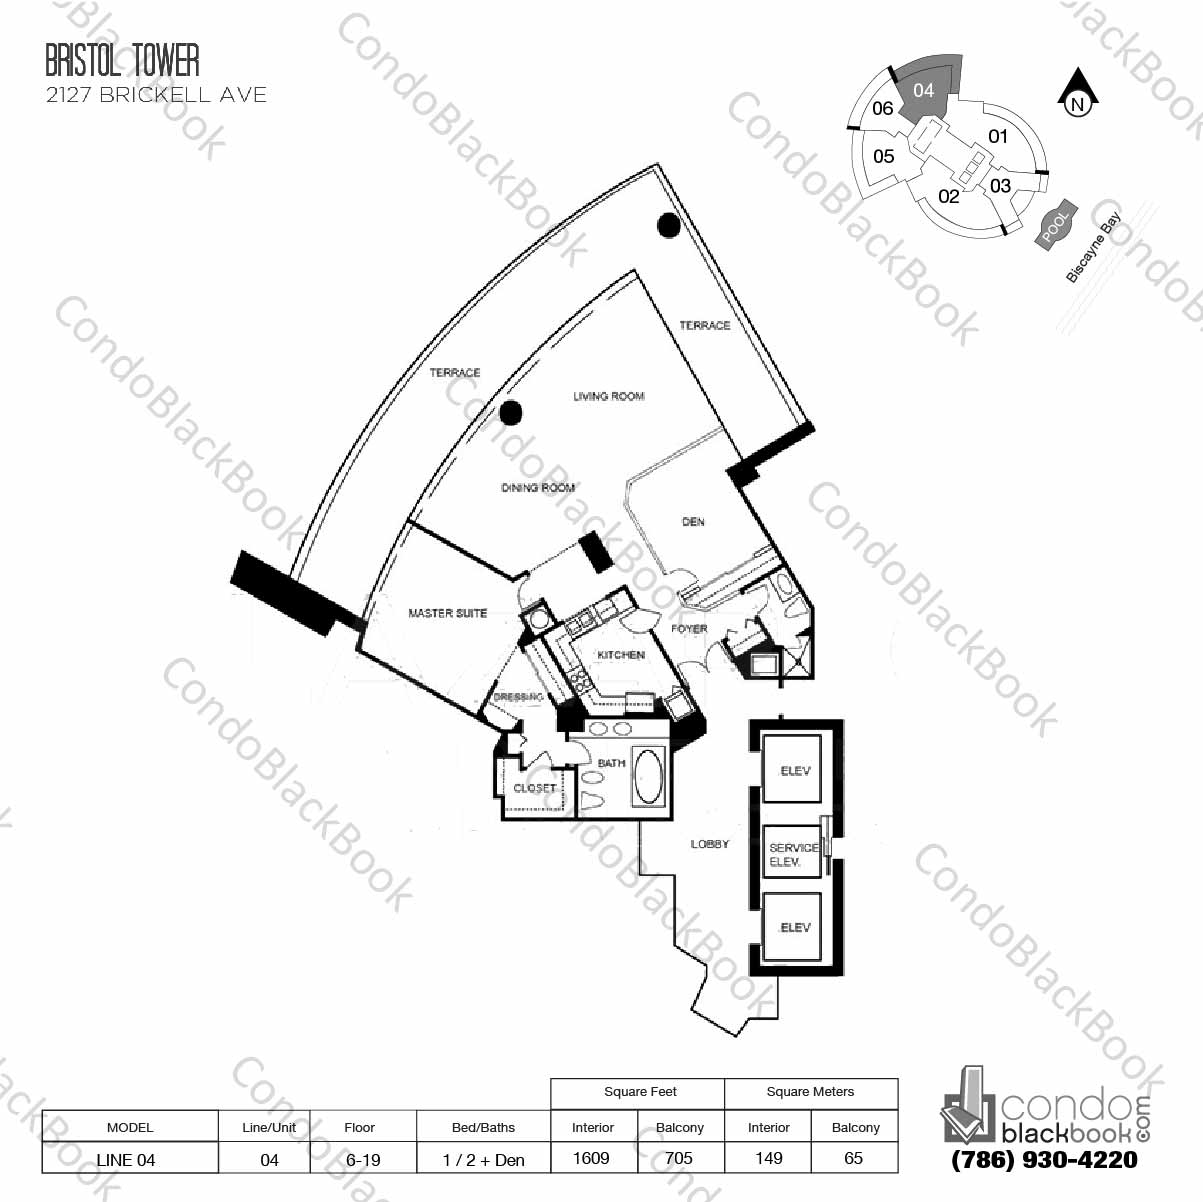 Bristol Tower Condominium Unit 1404 Condo for Sale in